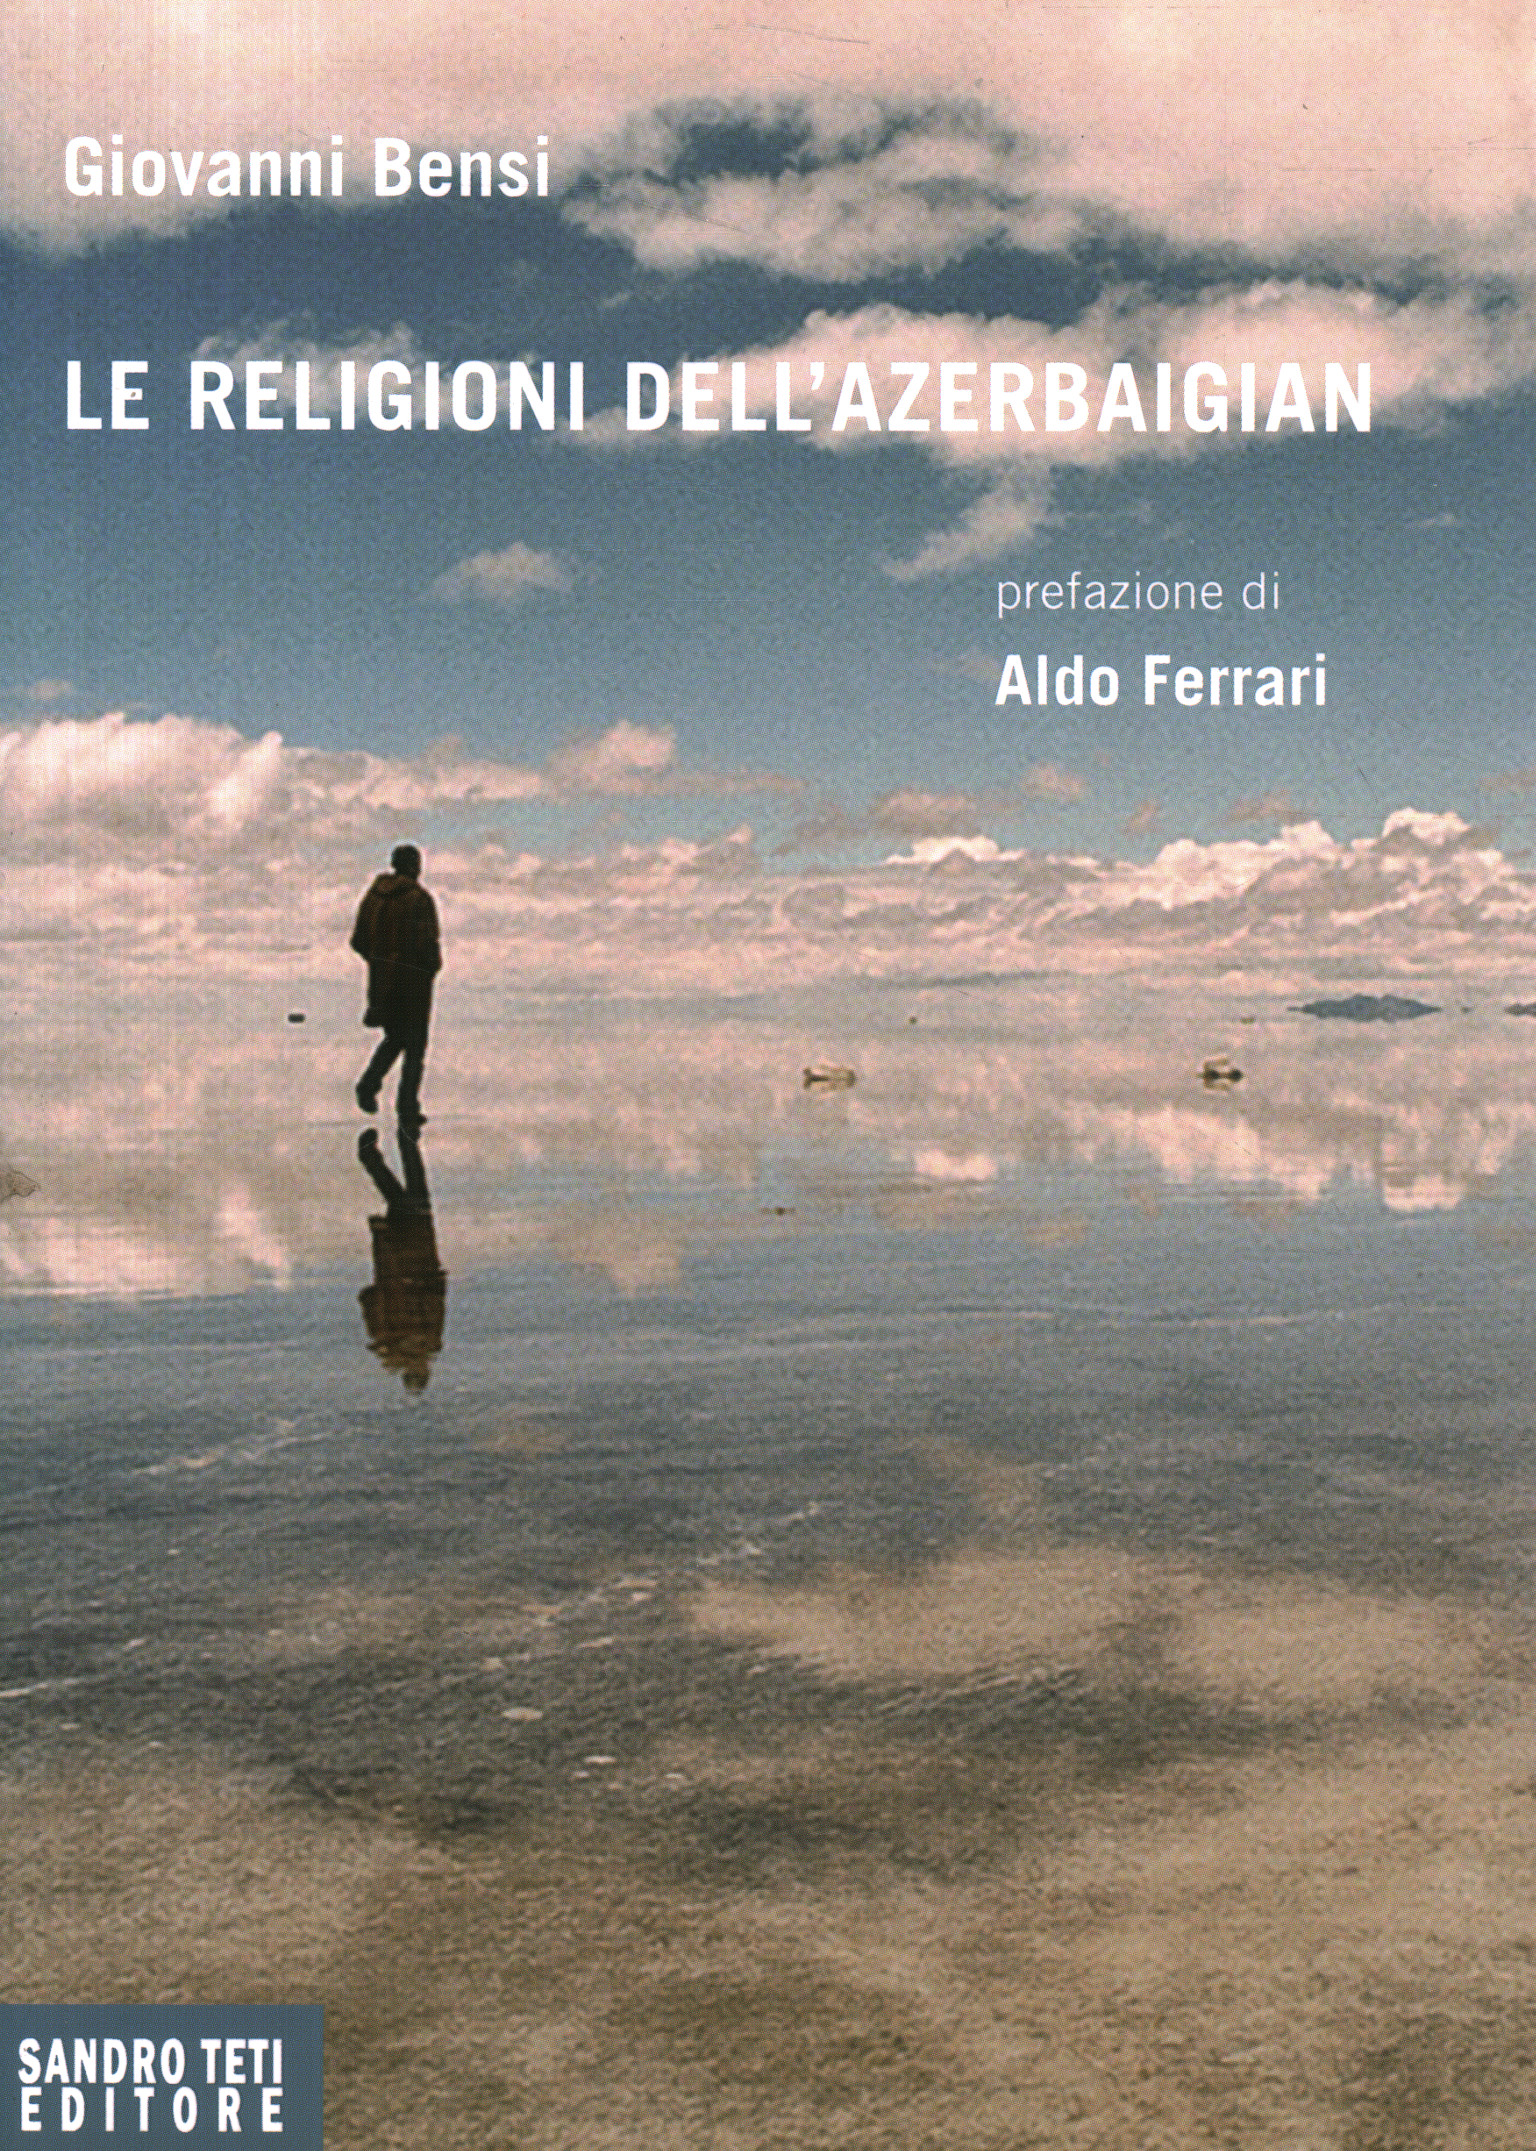 Libri - Religione - Storia della relig,Le religioni dell'Azerbaigian